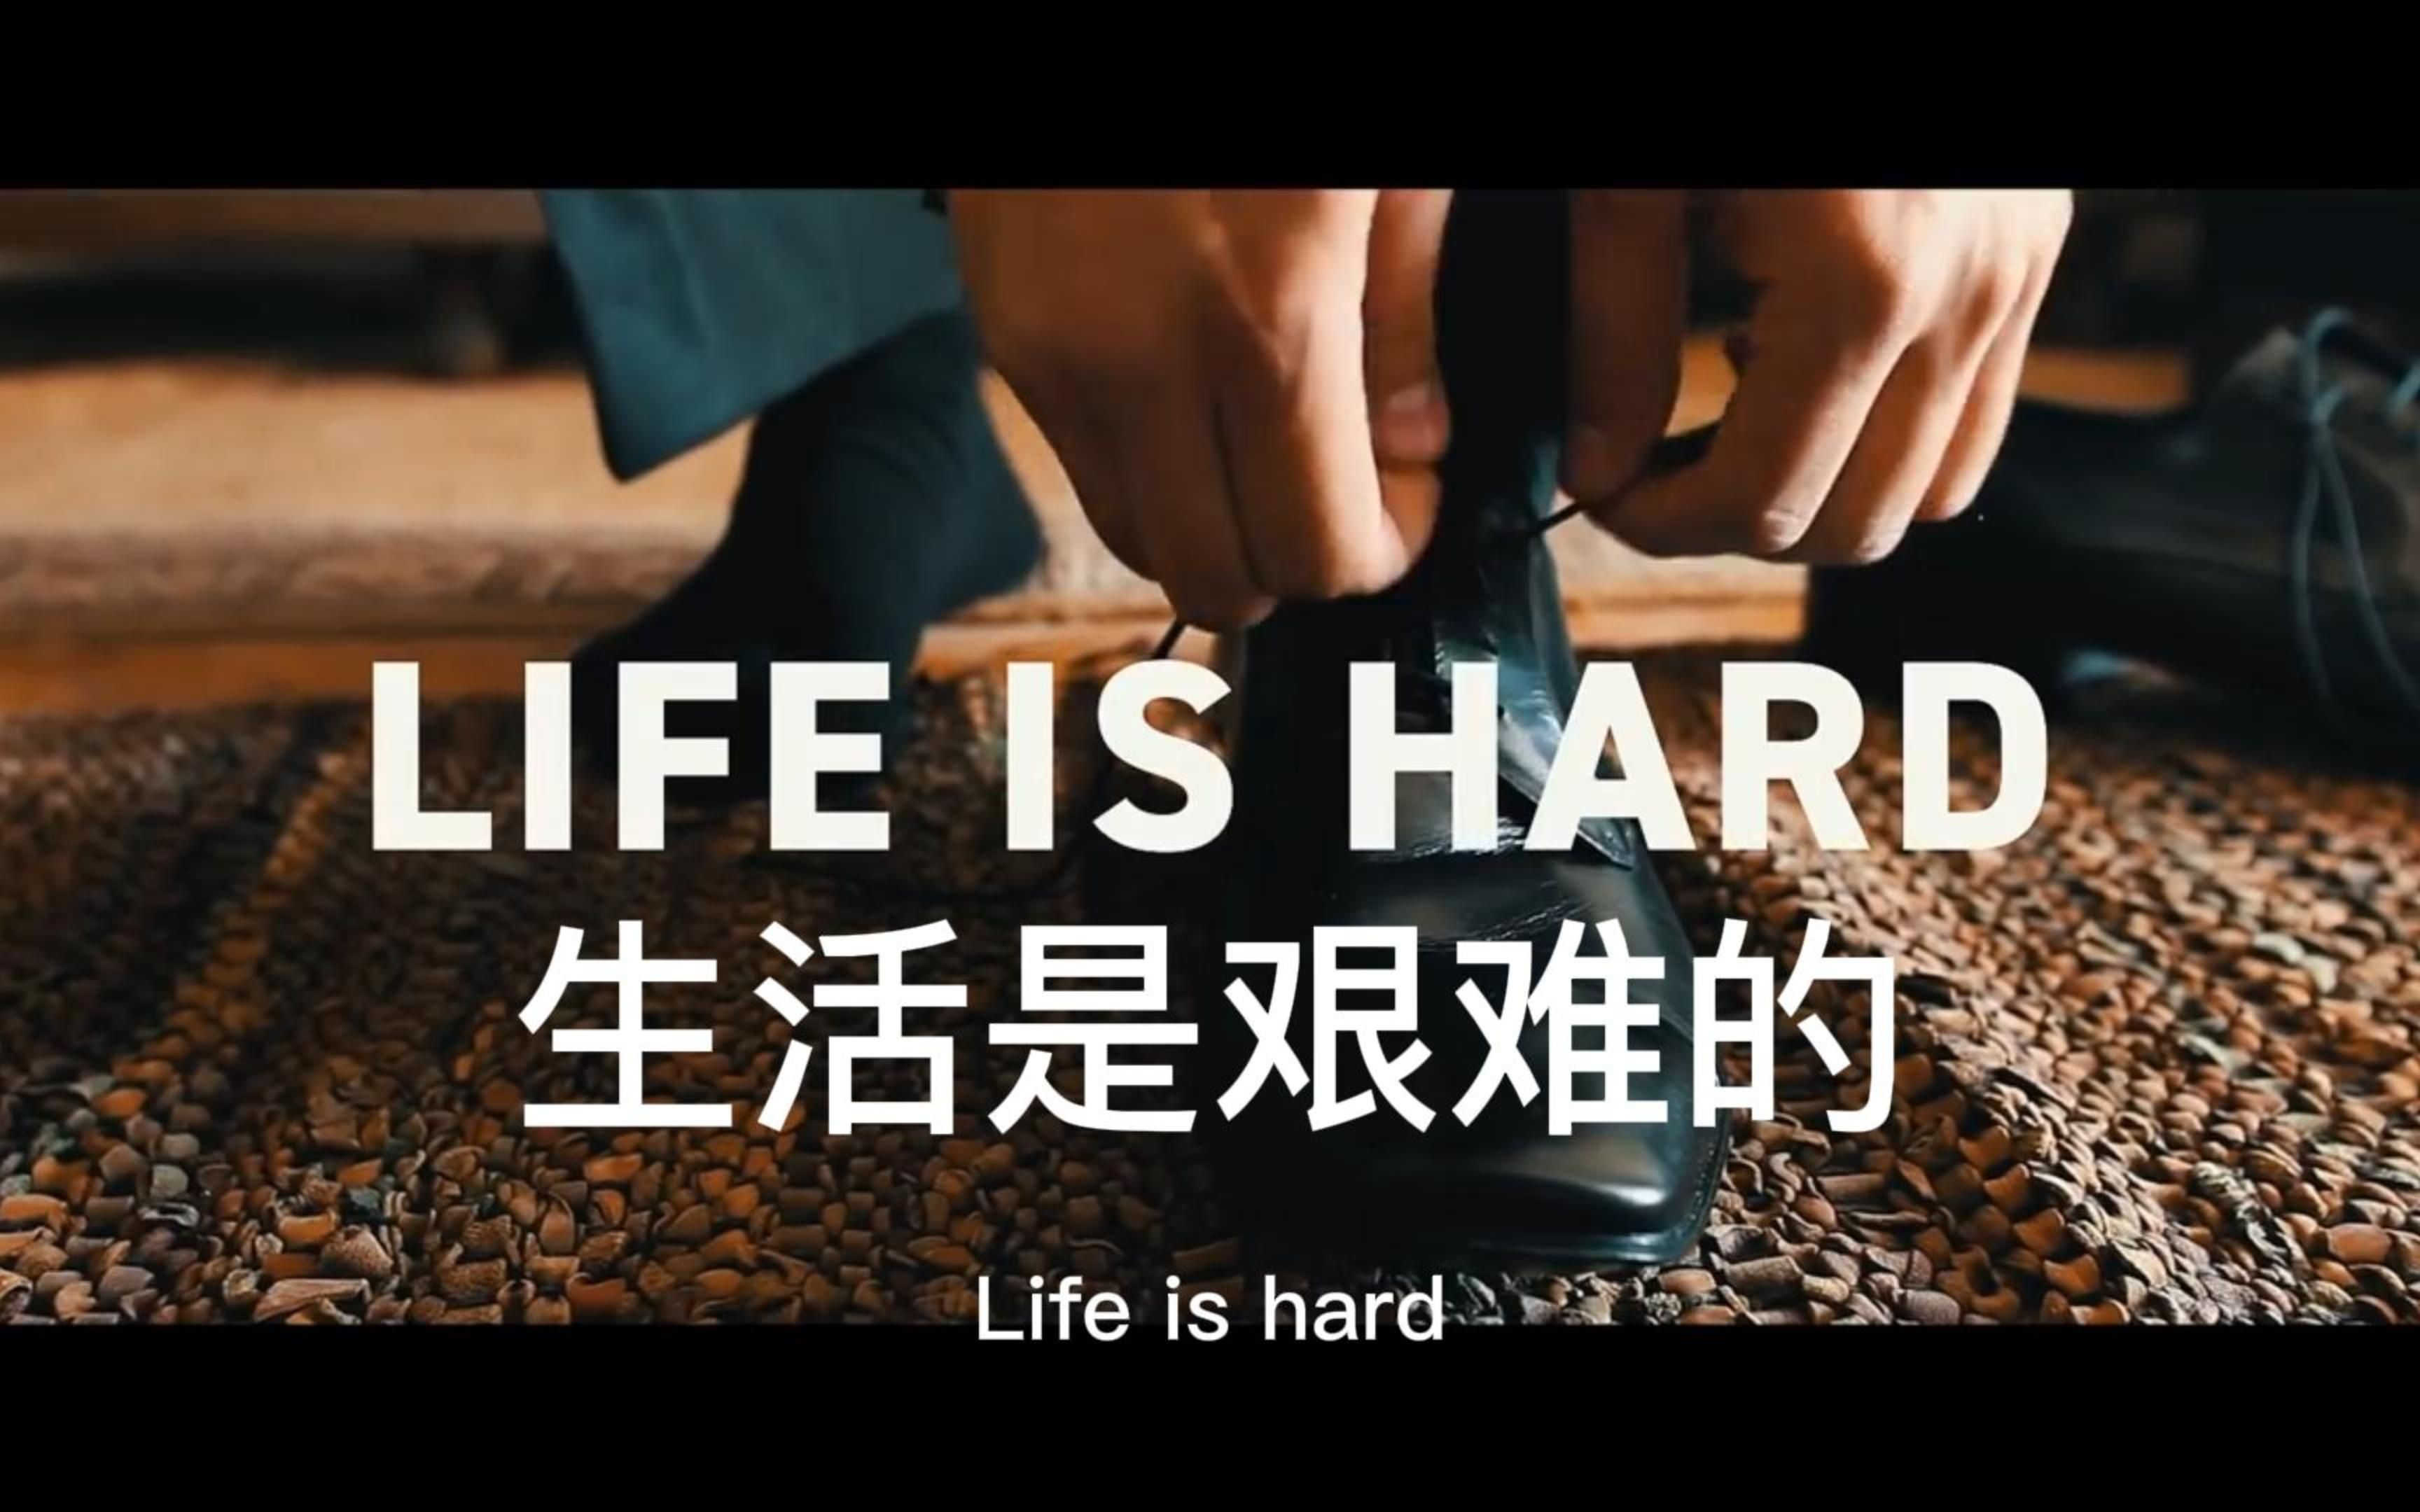 生活如此艰难,那生命的意义是什么?